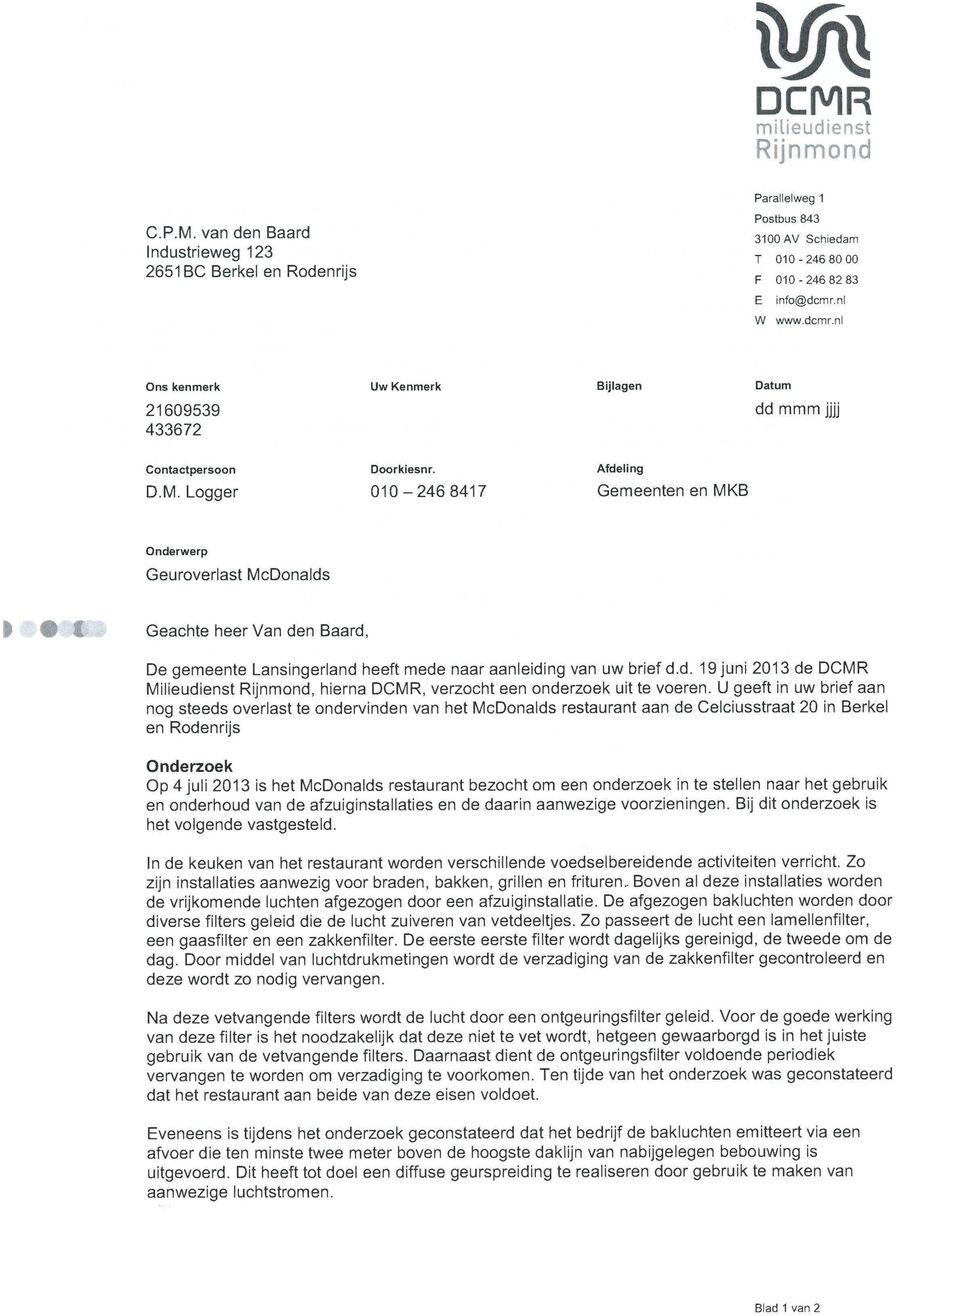 Logger 010-2468417 Gemeenten en MKB Onderwerp Geuroverlast McDonalds Geachte heer Van den Baard, De gemeente Lansingerland heeft mede naar aanleiding van uw brief d.d. 19 juni 2013 de Milieudienst, hierna, verzocht een onderzoek uit te voeren.